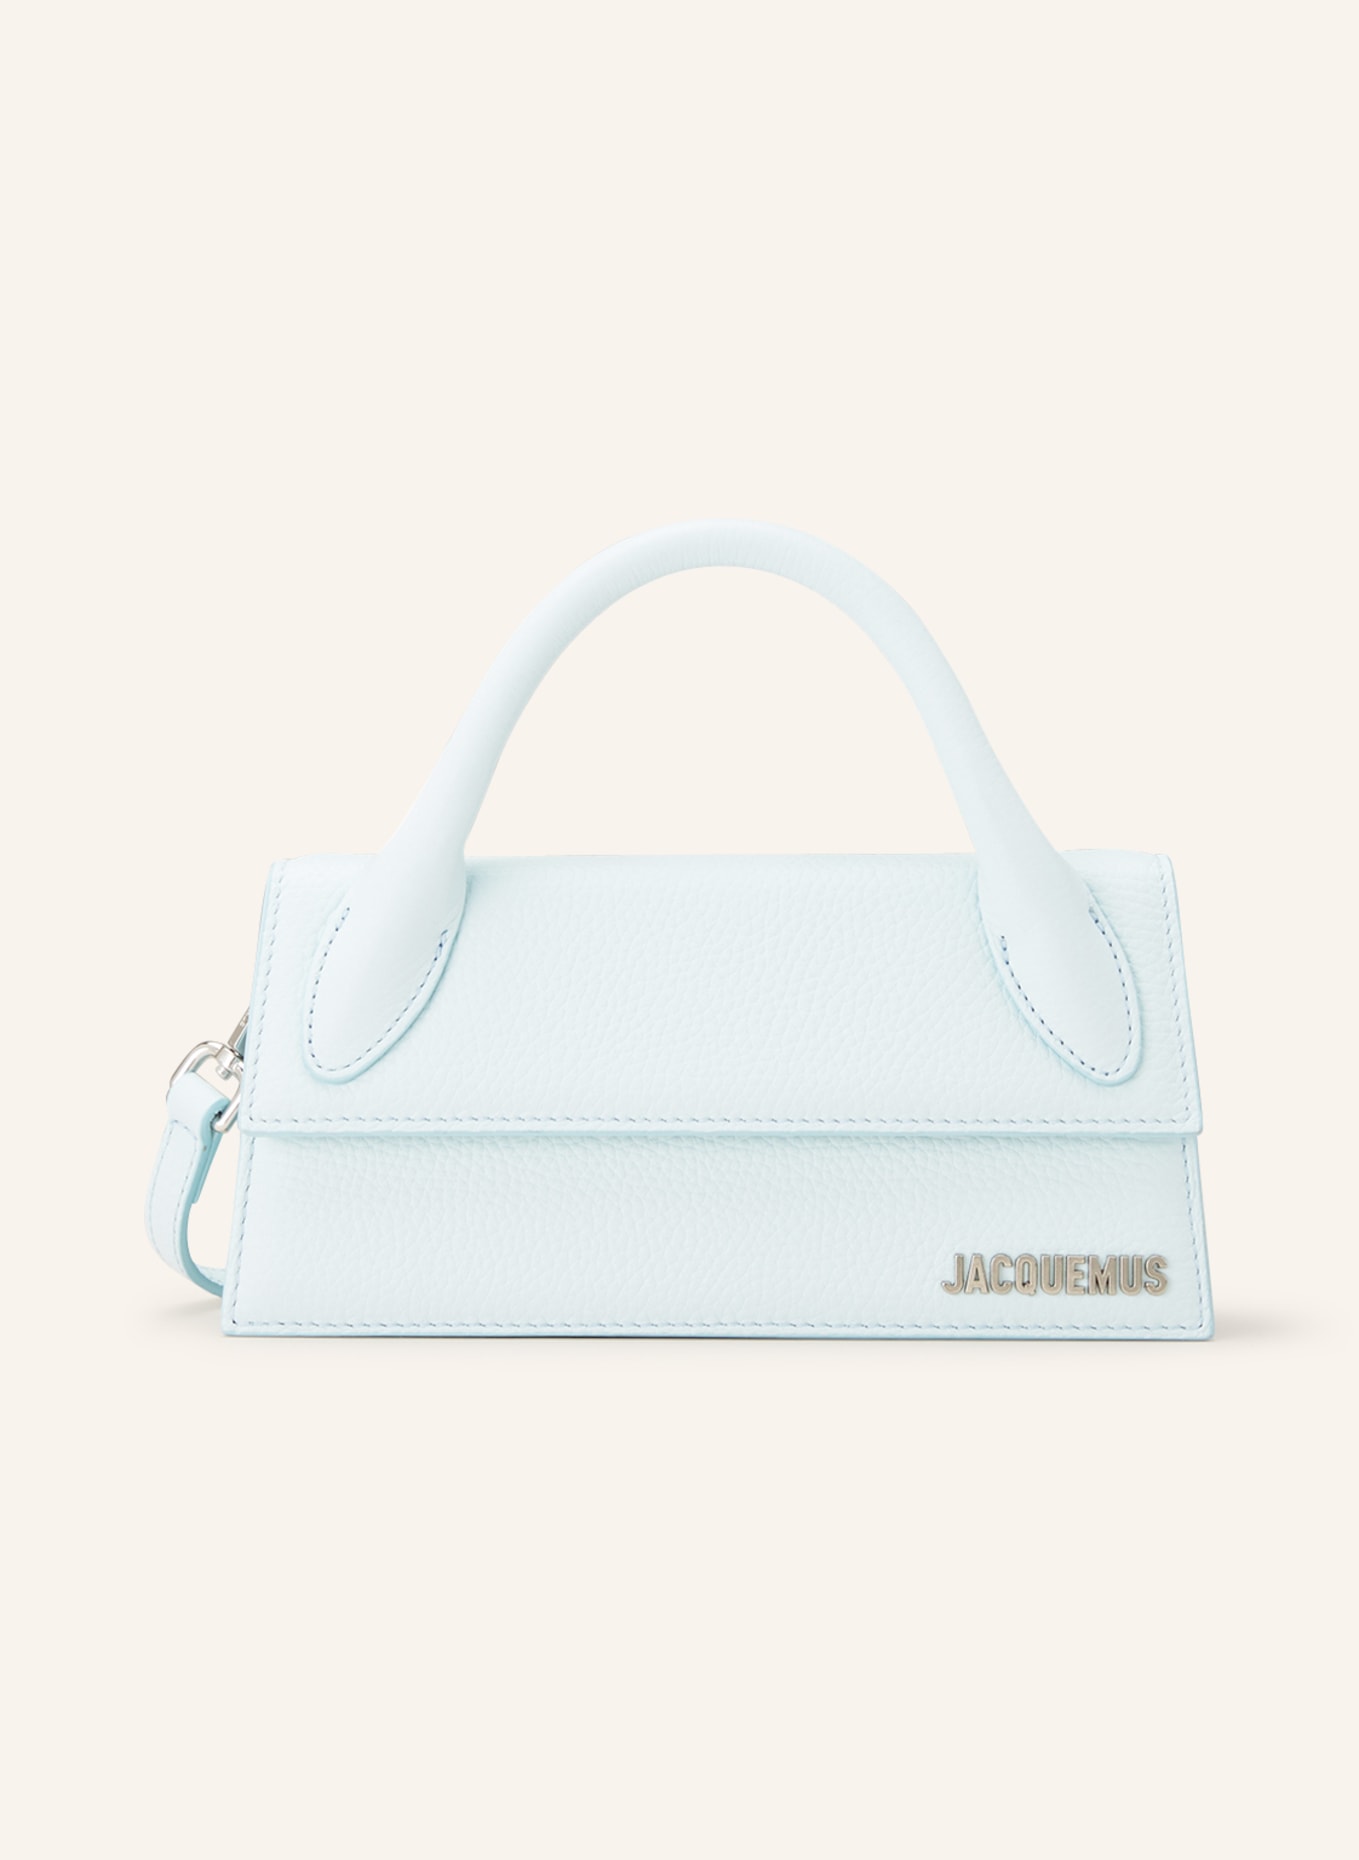 JACQUEMUS Handbag LE CHIQUITO LONG, Color: LIGHT BLUE (Image 1)